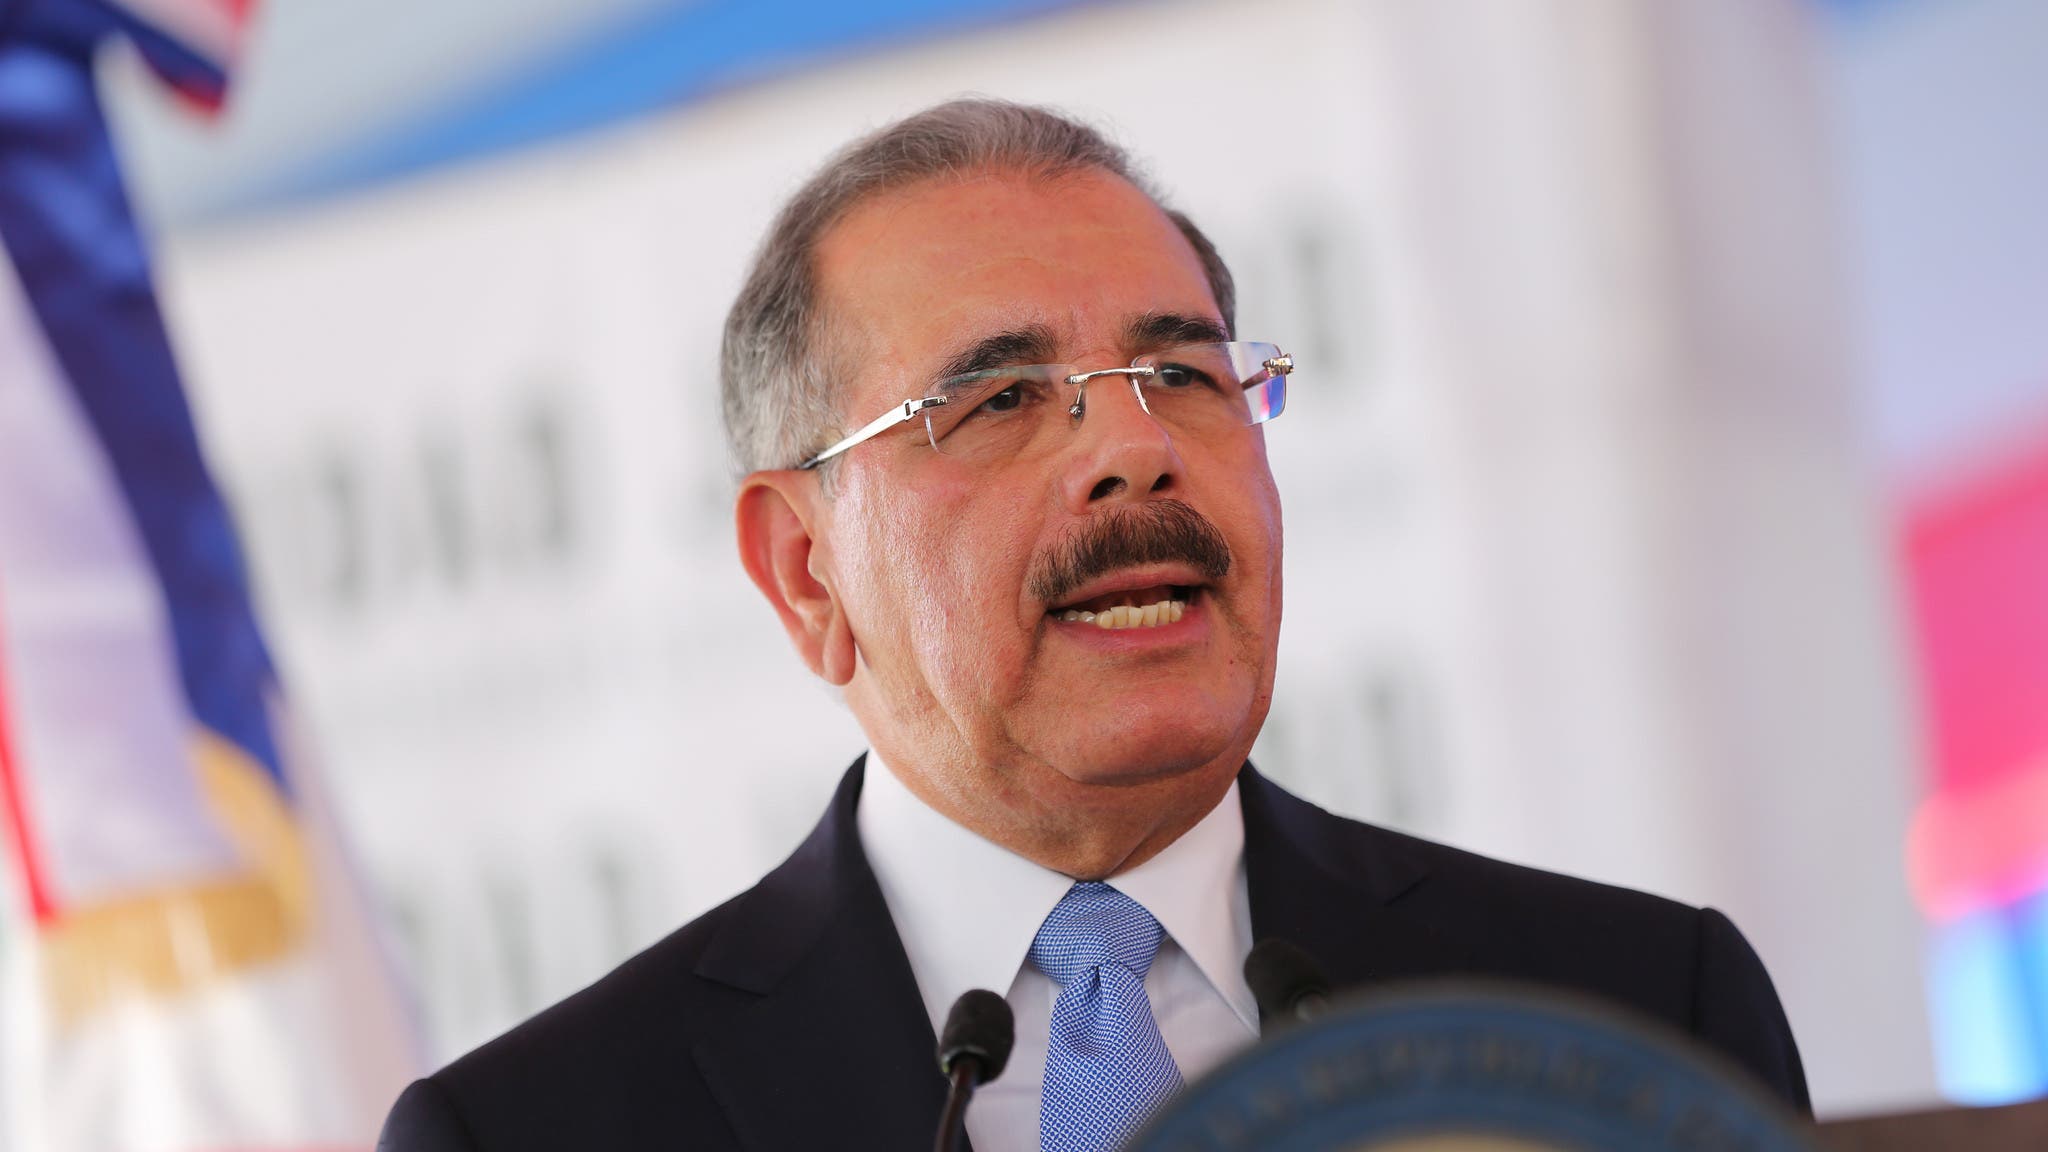 Danilo Medina en Davos: “El diálogo es el único camino para el pueblo venezolano”